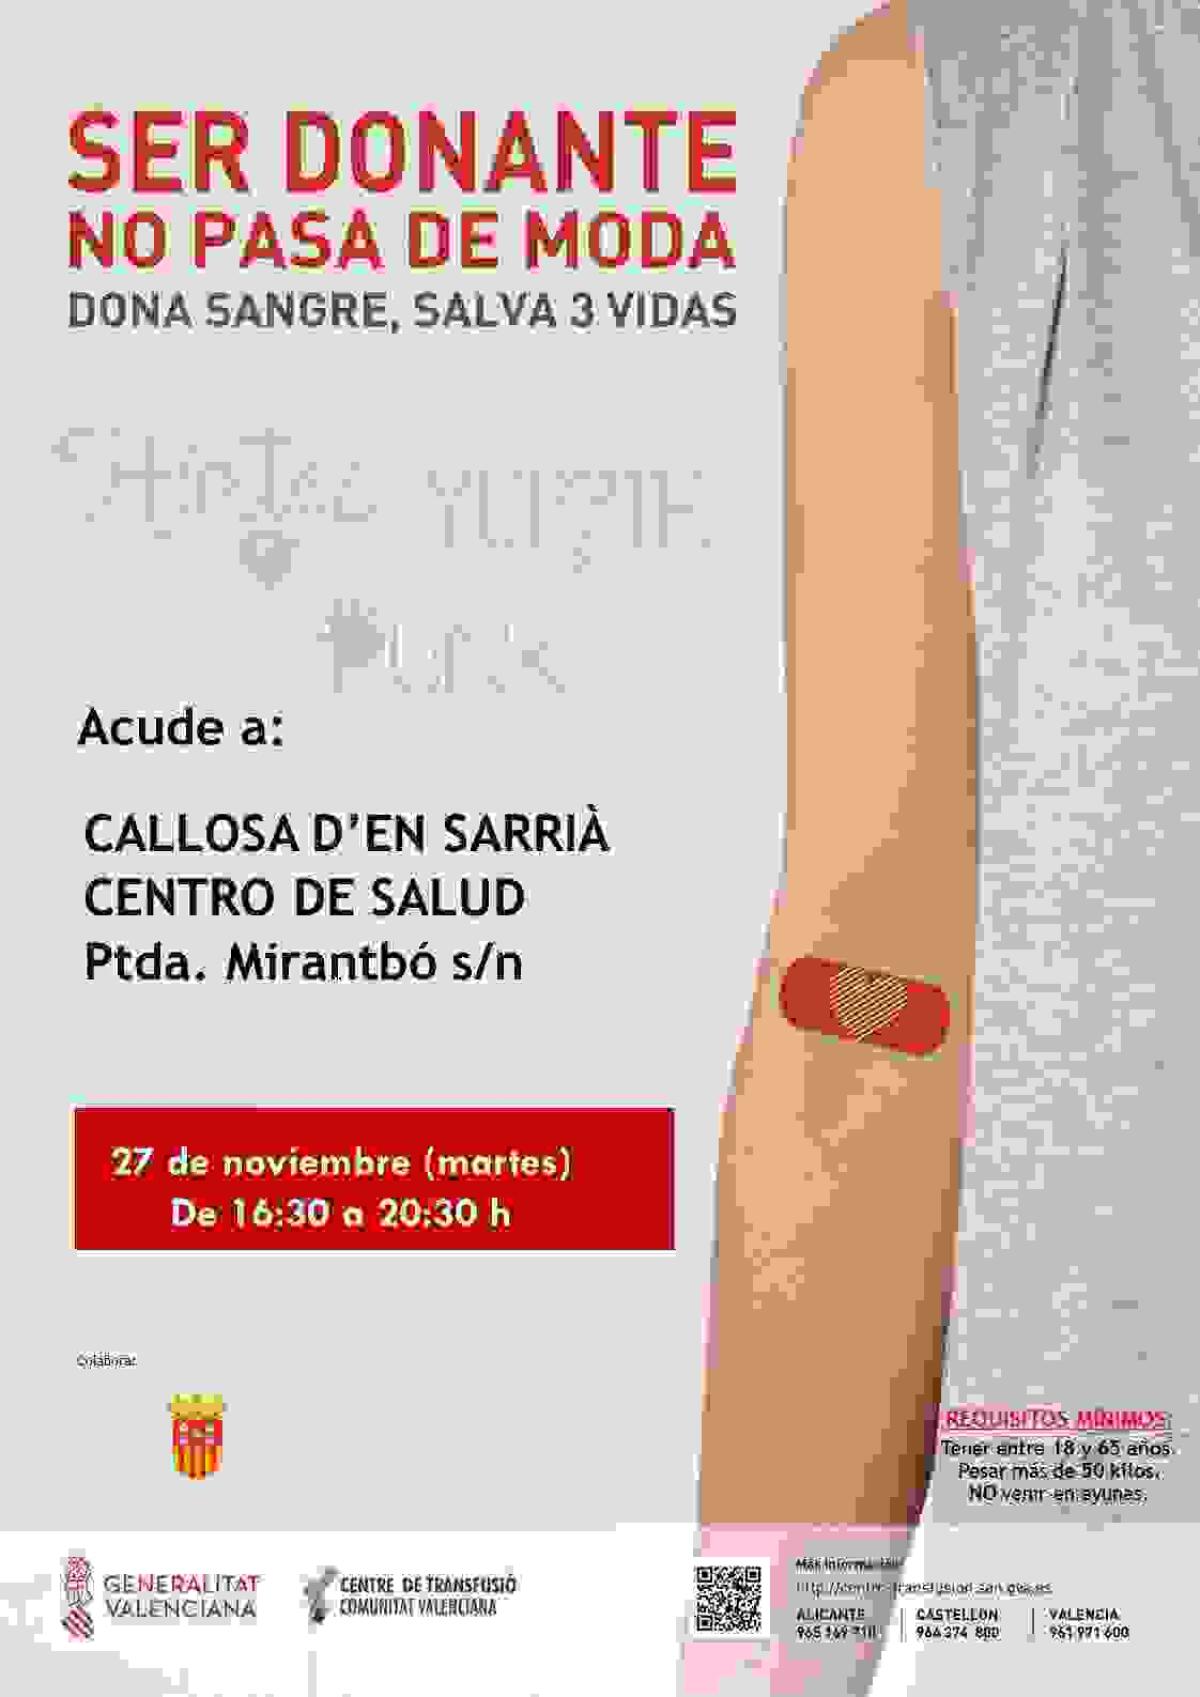 Donación de Sangre el próximo 27 de noviembre en el Centro de Salud de Callosa d’en Sarrià